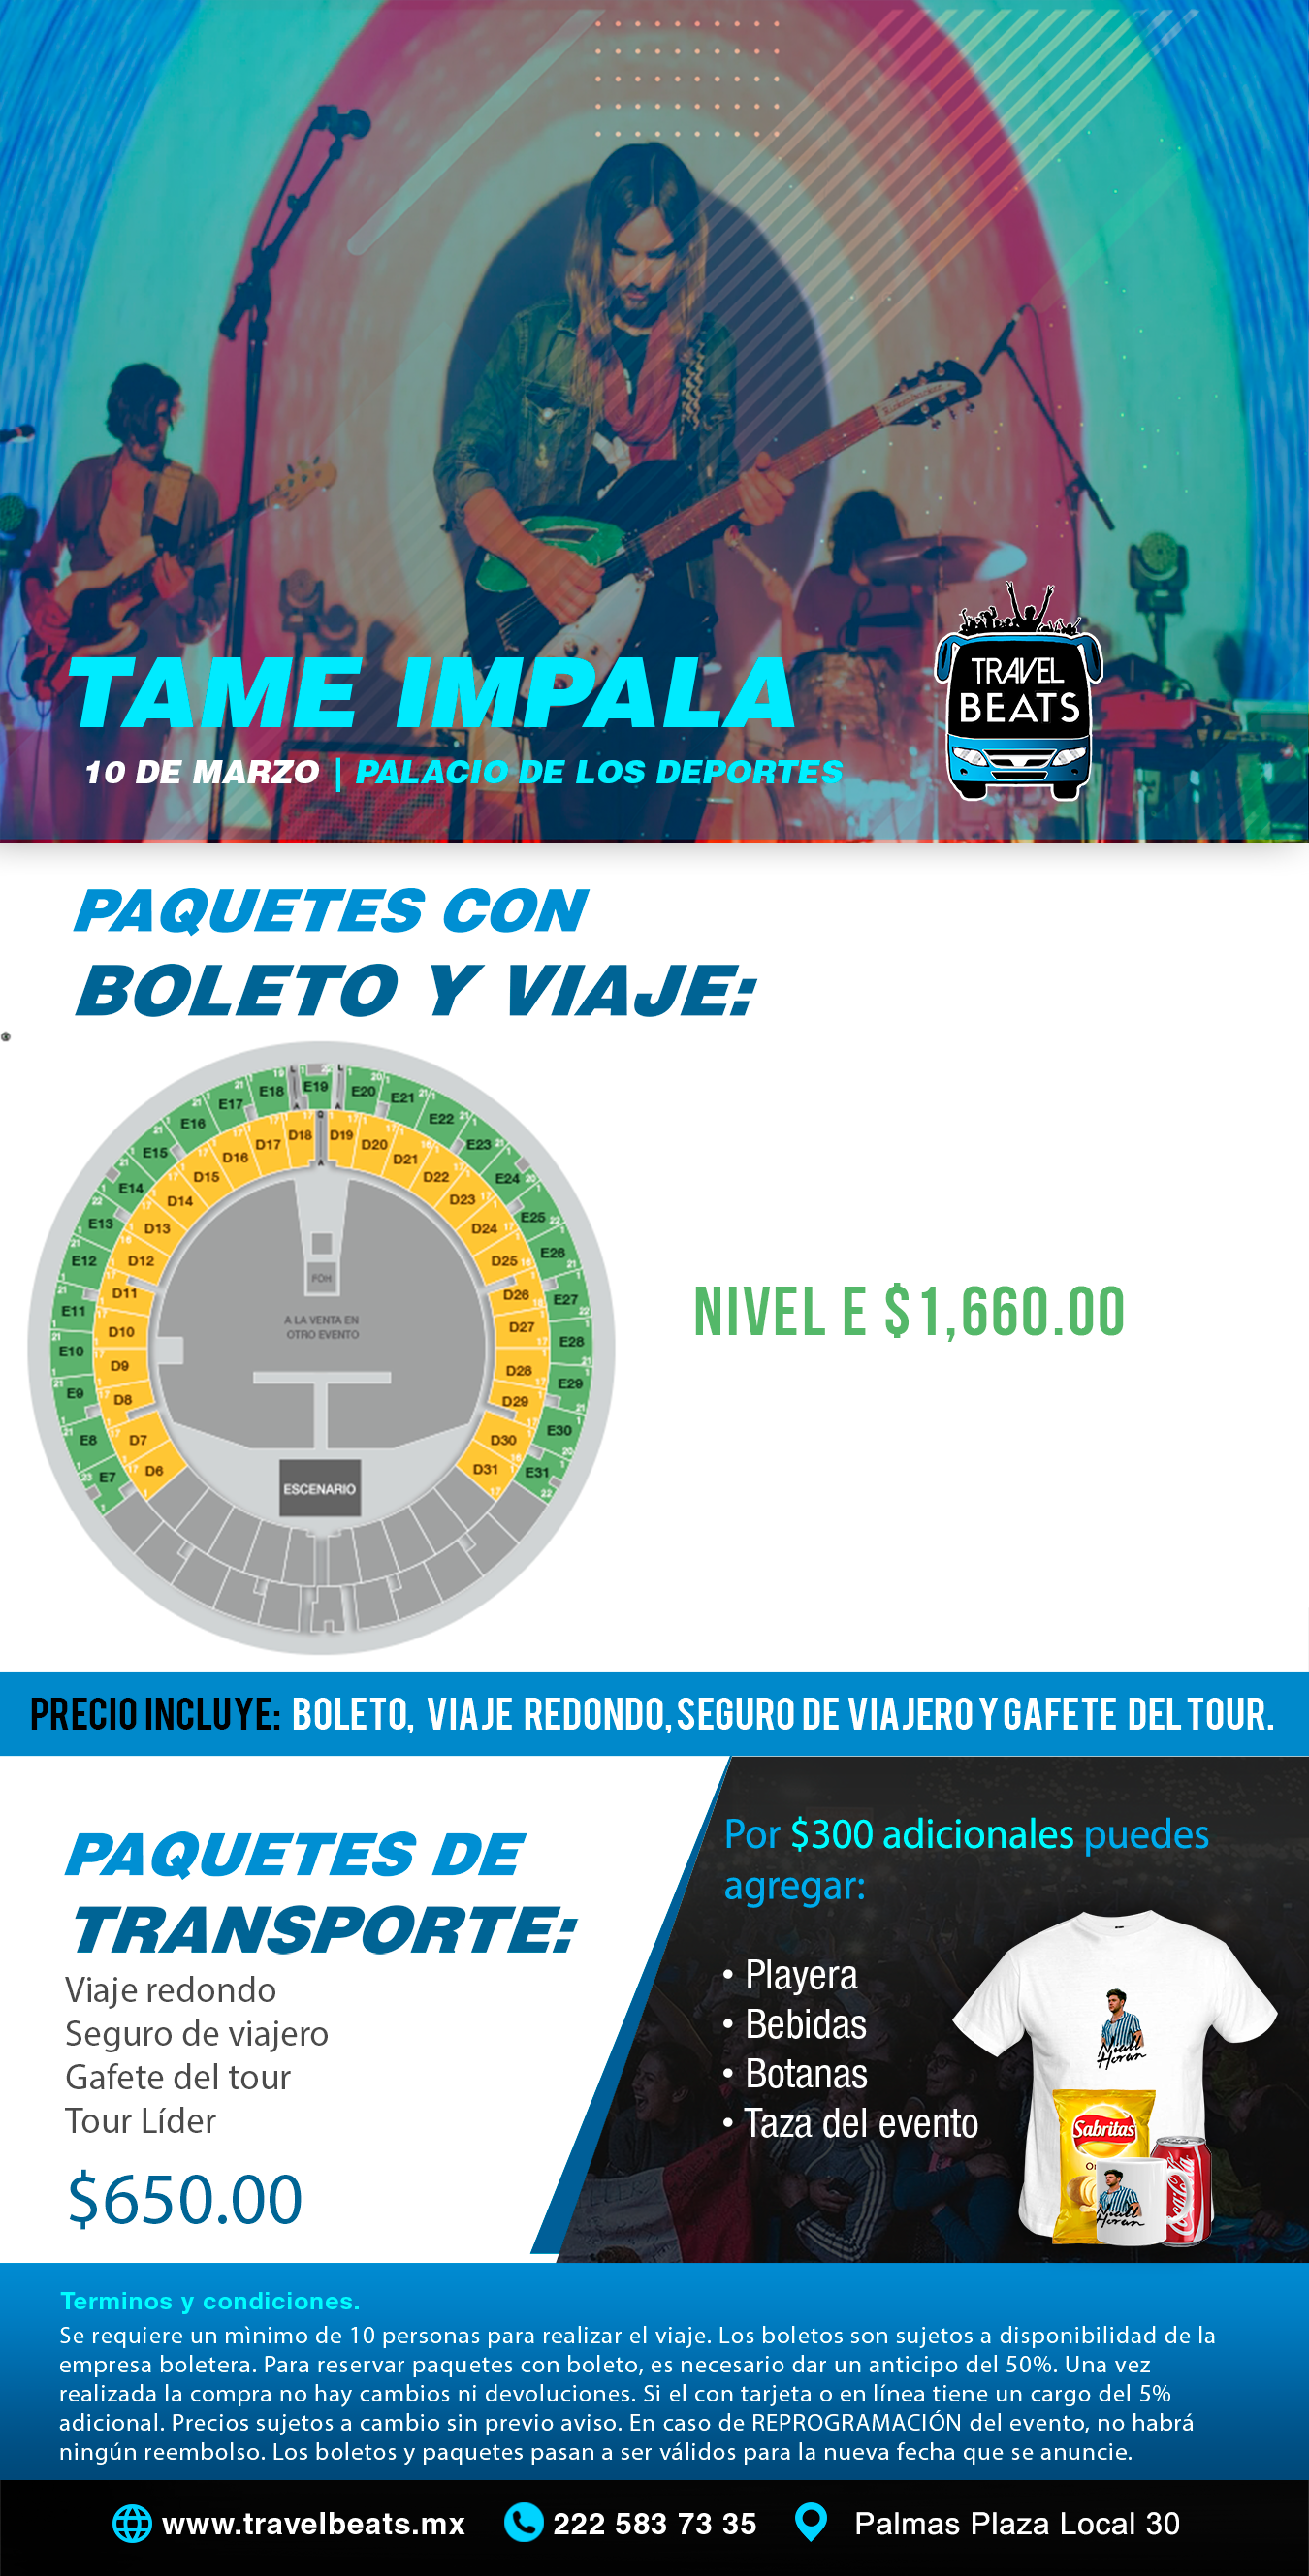 Tame Impala | Boleto y viaje desde Puebla | Travel Beats